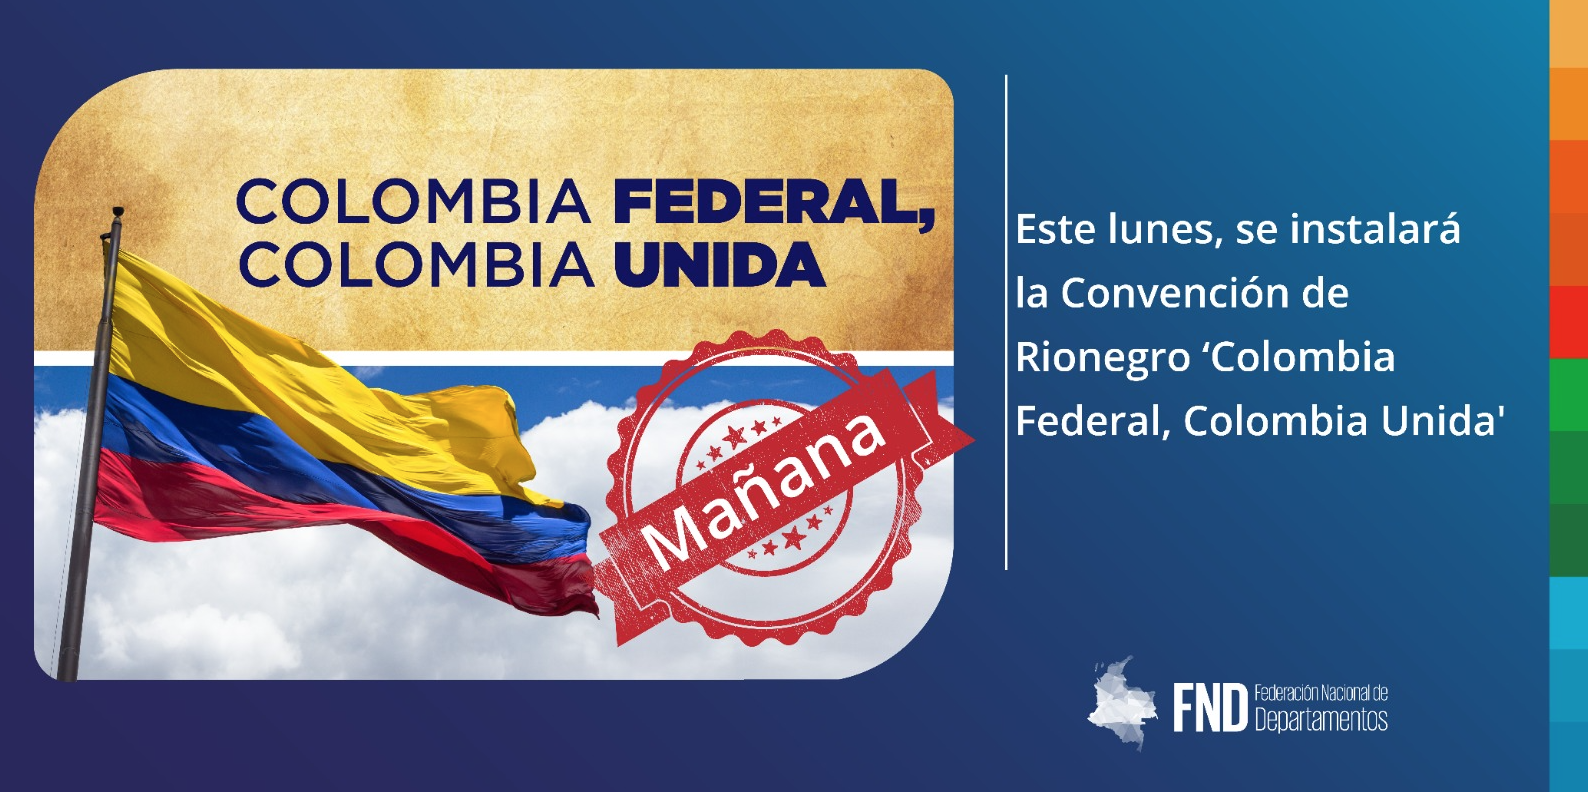 Este lunes, se instalará la Convención de Rionegro ‘Colombia Federal, Colombia Unida’